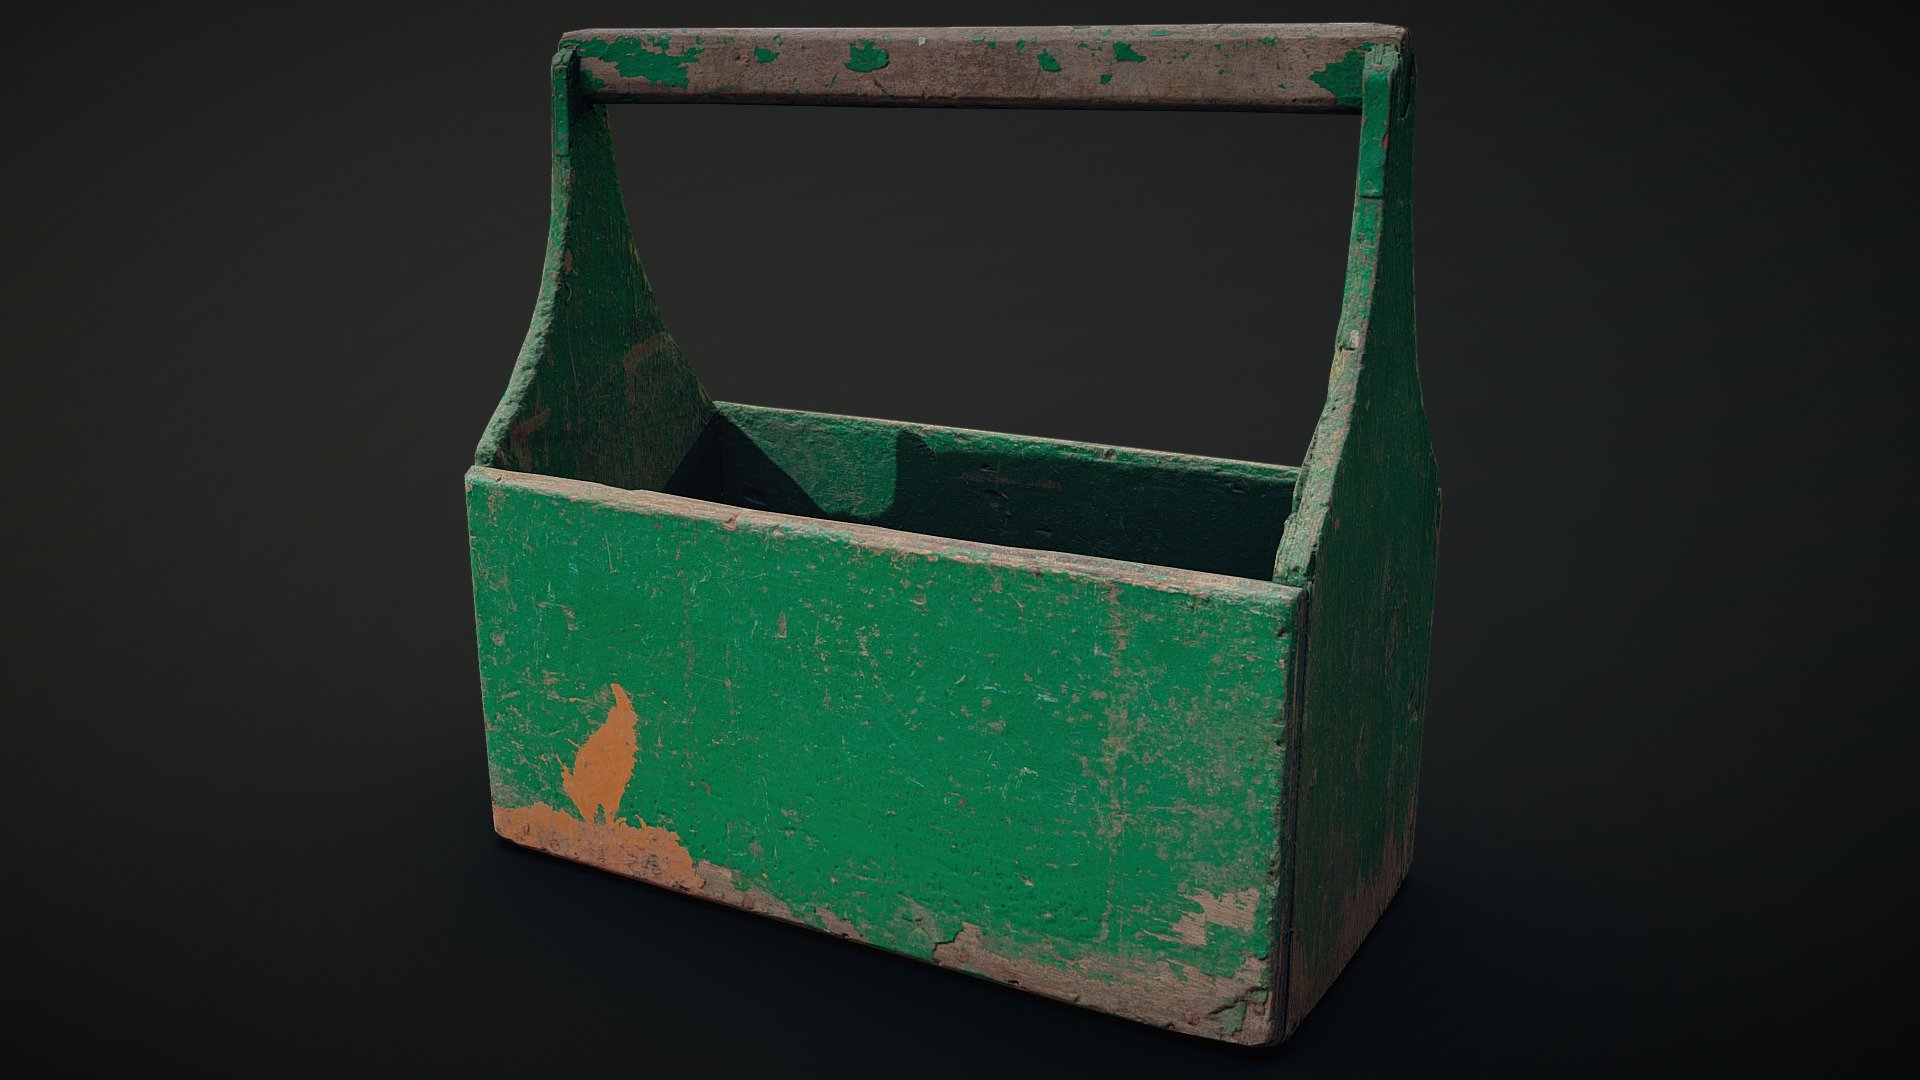 Photoscan (160 photos) - Old Box Tool - 3D model by Alexander Komendant (SashaRX) (@Sasharx) 3d model